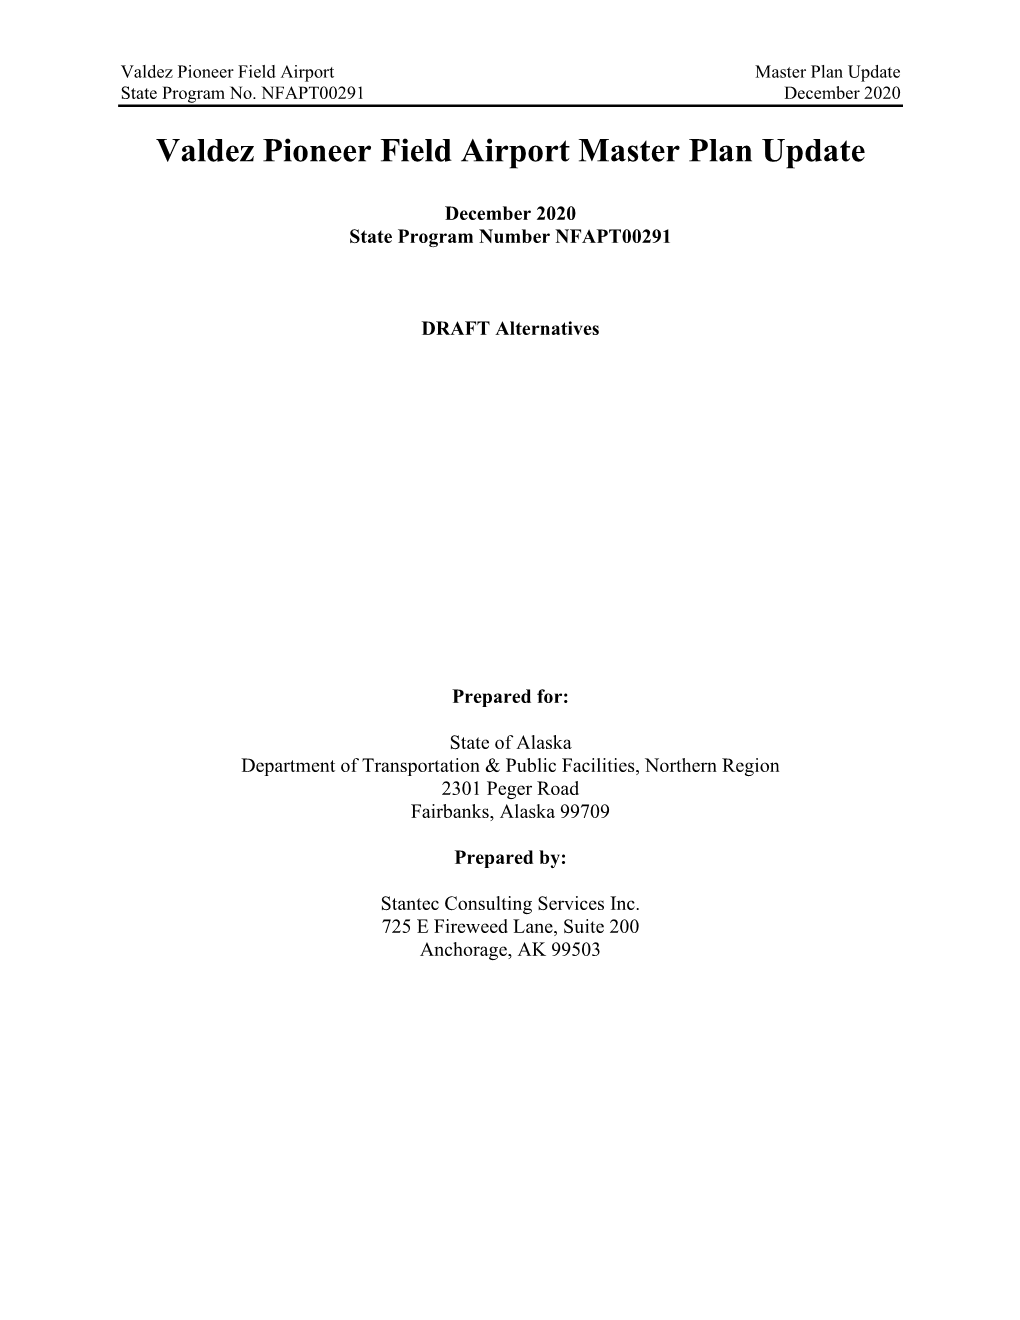 Valdez Pioneer Field Airport Master Plan Update State Program No